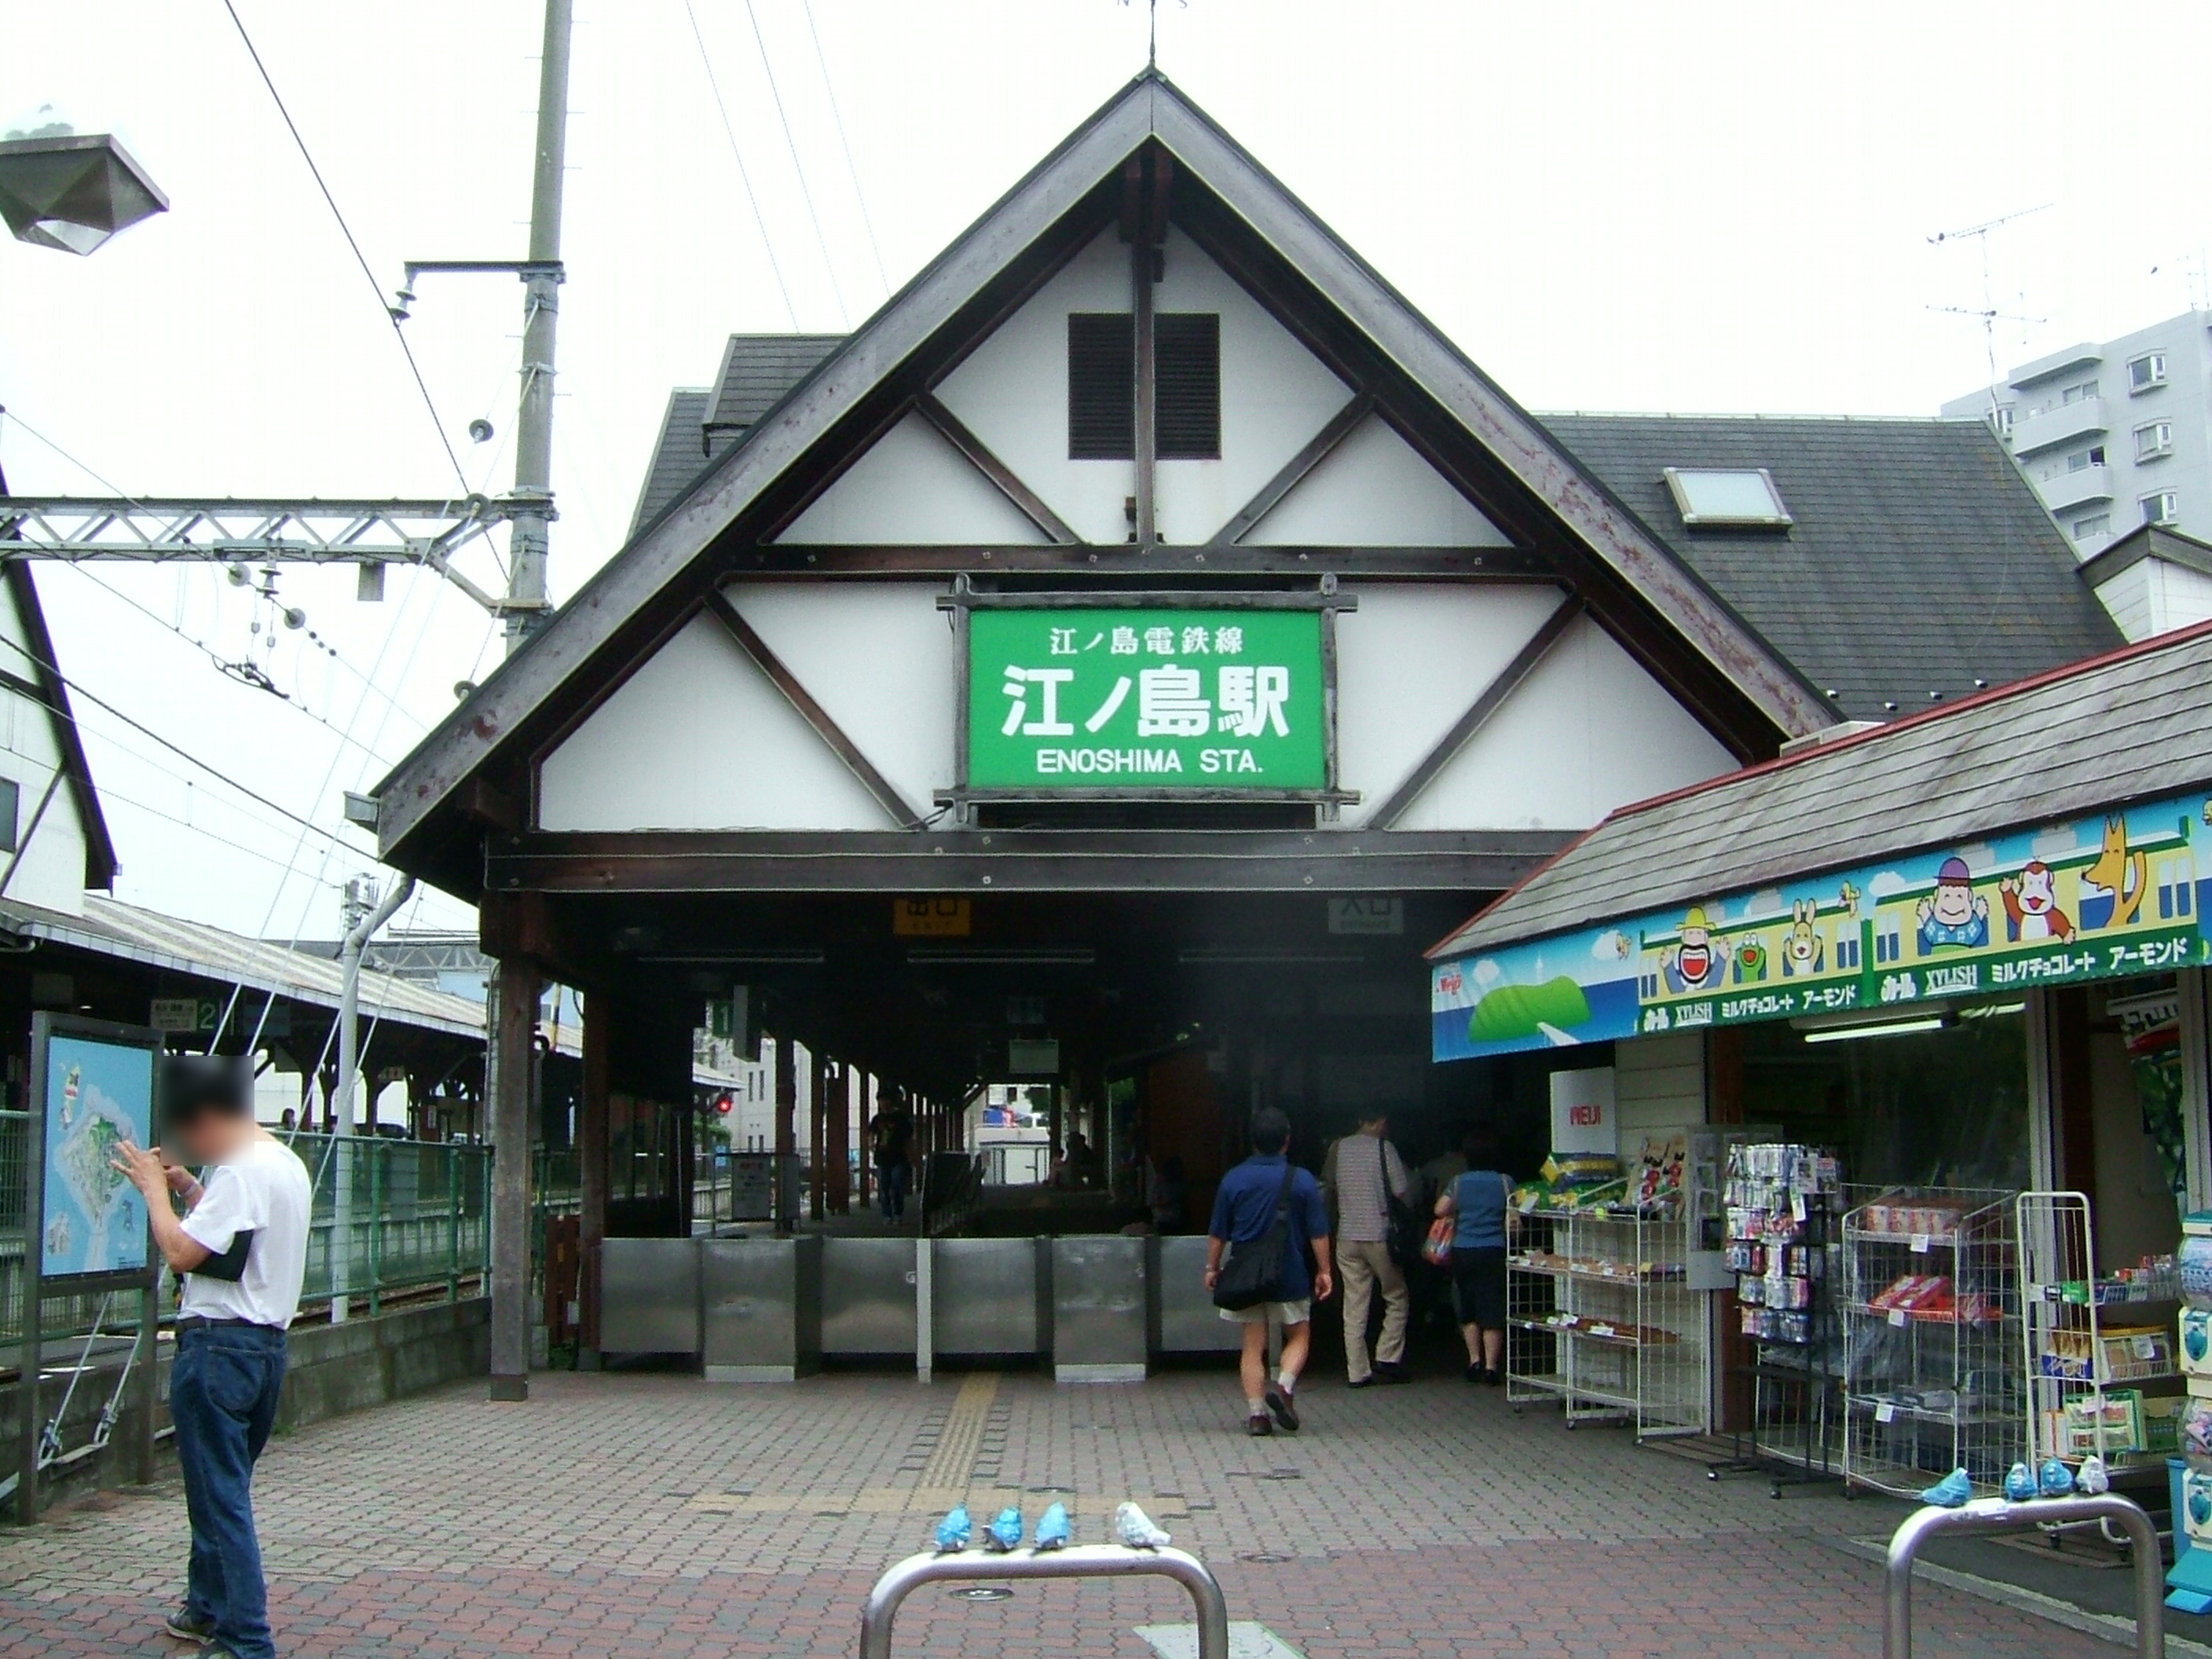 에노시마 역